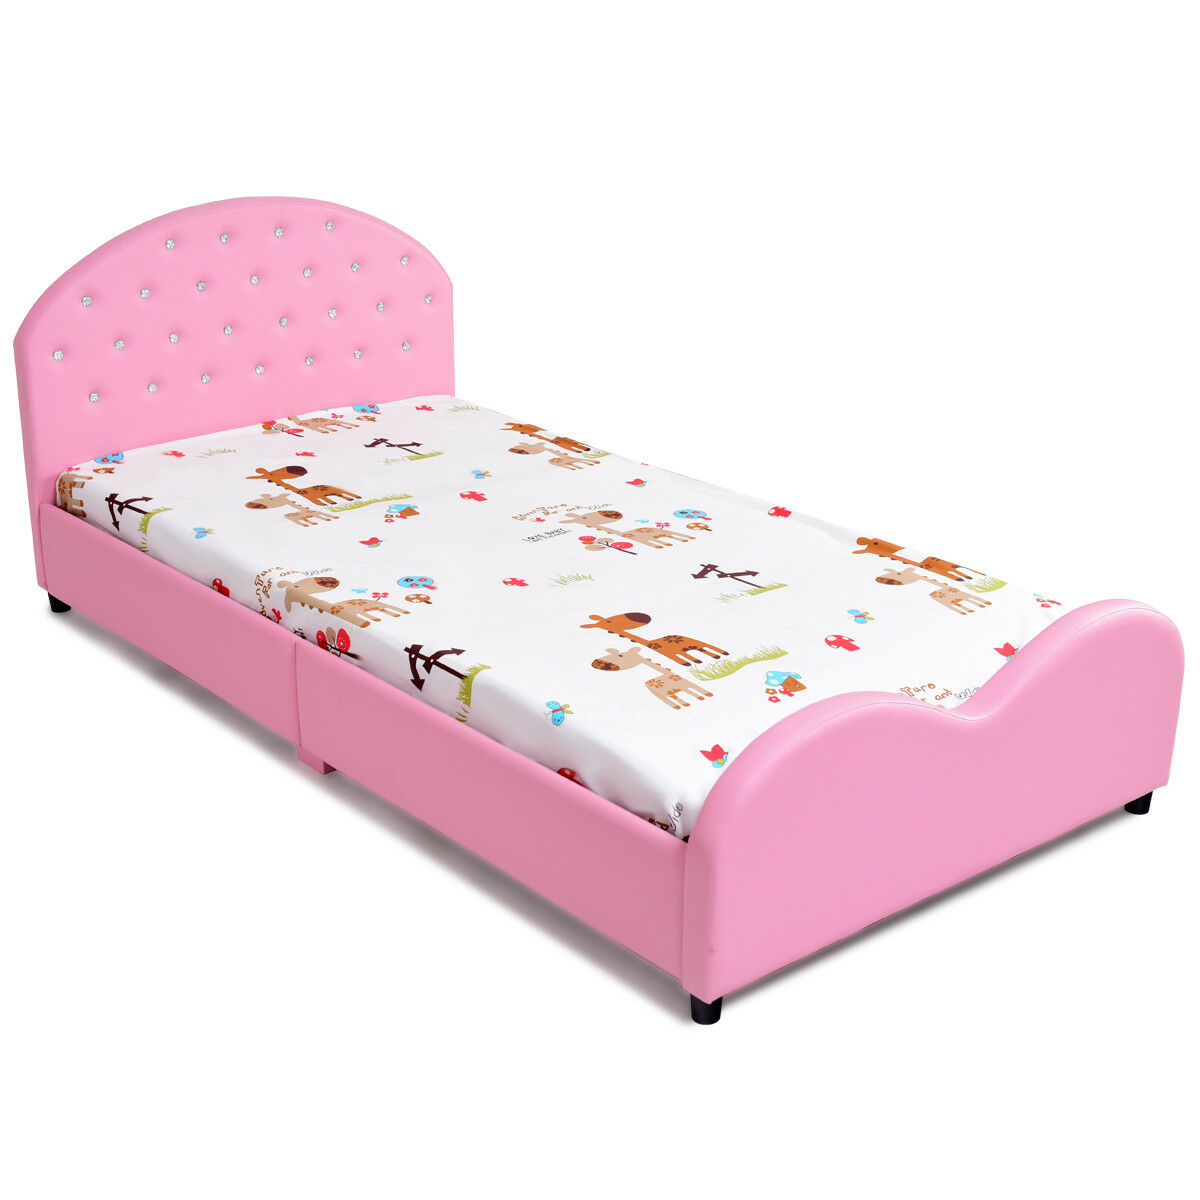 Costway Kids Children PU Upholstered Platform Wooden Princess Bed Bedroom Furniture Pink - image 8 of 9